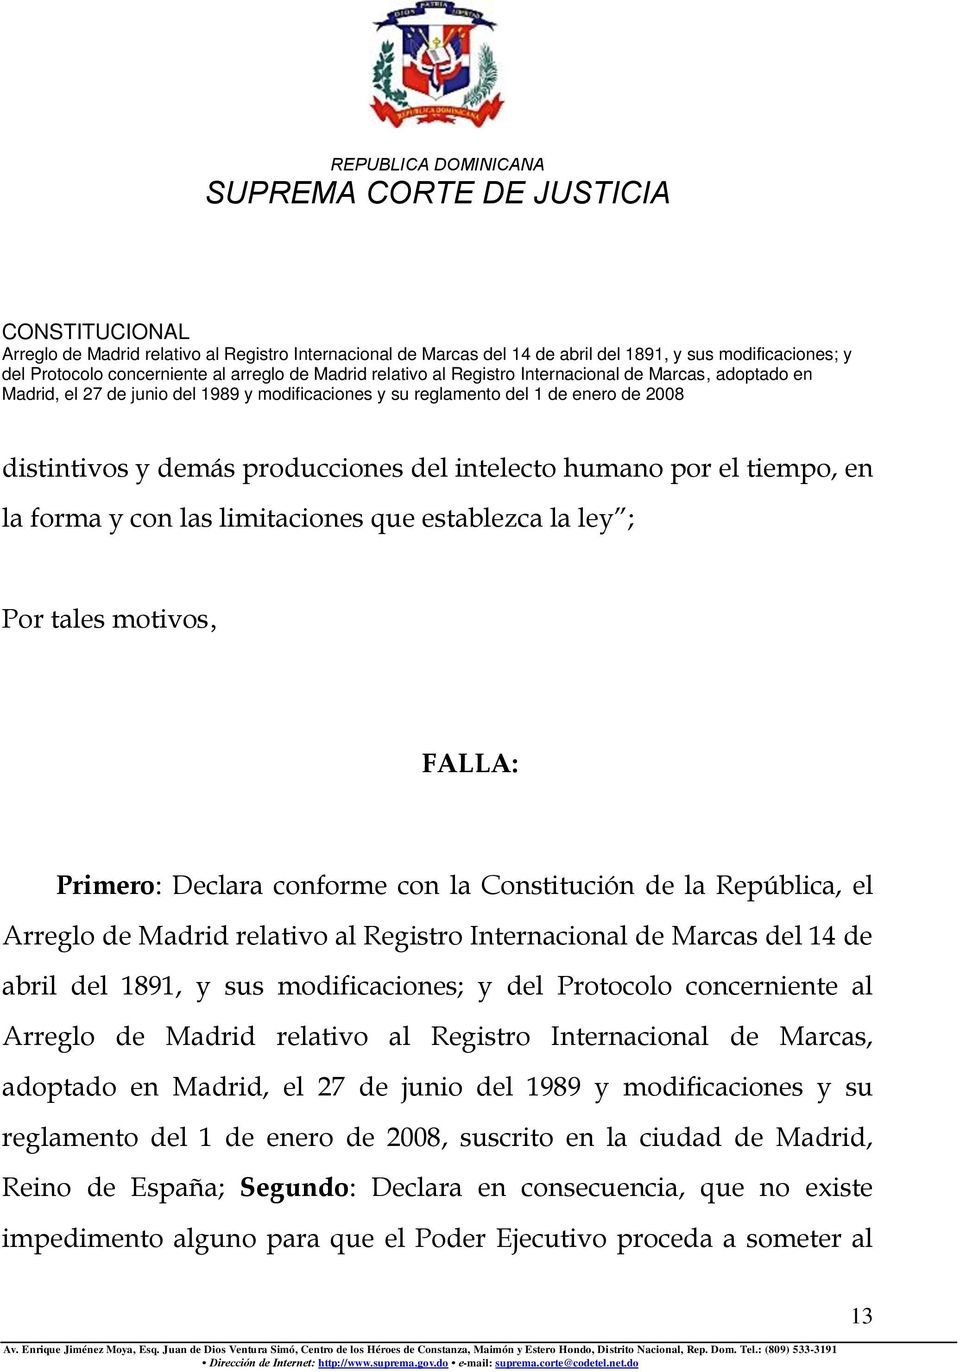 Protocolo concerniente al Arreglo de Madrid relativo al Registro Internacional de Marcas, adoptado en Madrid, el 27 de junio del 1989 y modificaciones y su reglamento del 1